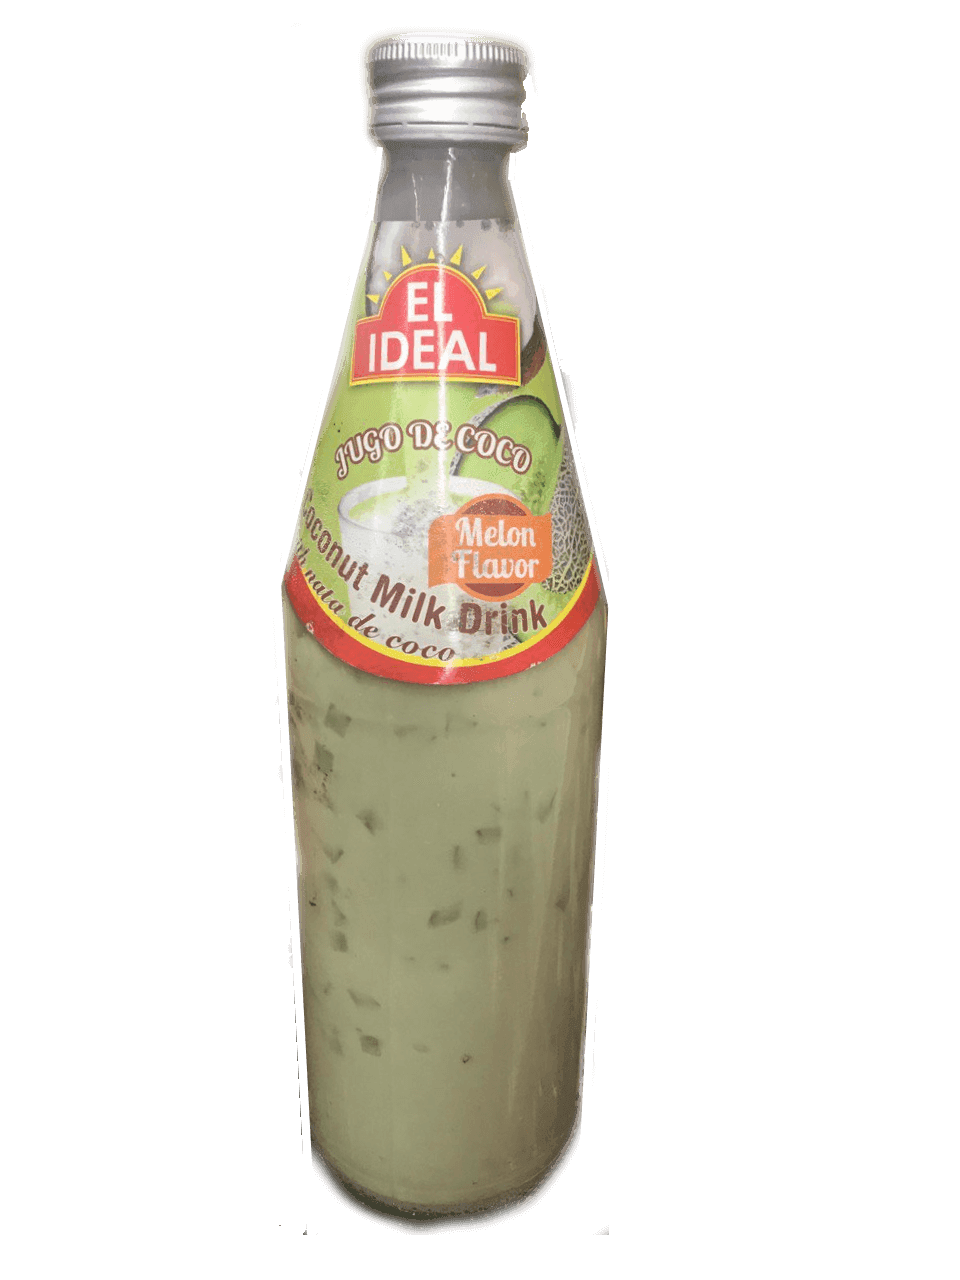 El Ideal - Coconut Milk Drink Melon Flavor 17oz